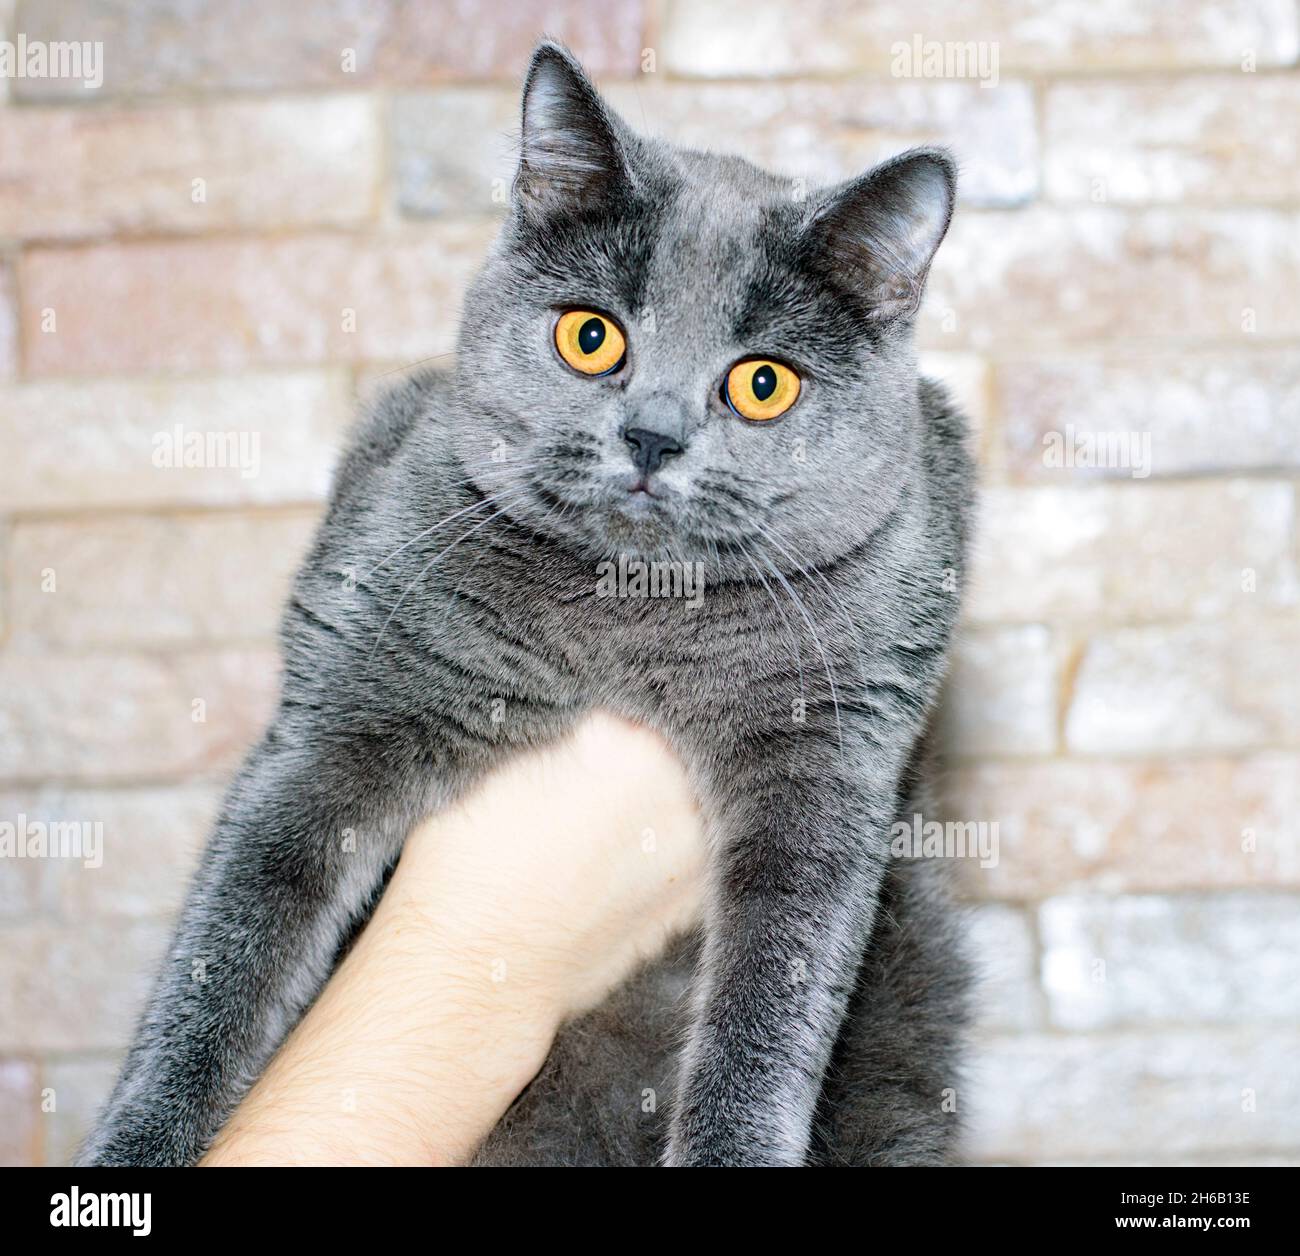 Junge schöne blaue klassische schottische Katze in den Händen auf einem Backstein Wand Hintergrund, das Thema der Katzen und Katzen im Haus, Haustiere ihre Fotos und thei Stockfoto